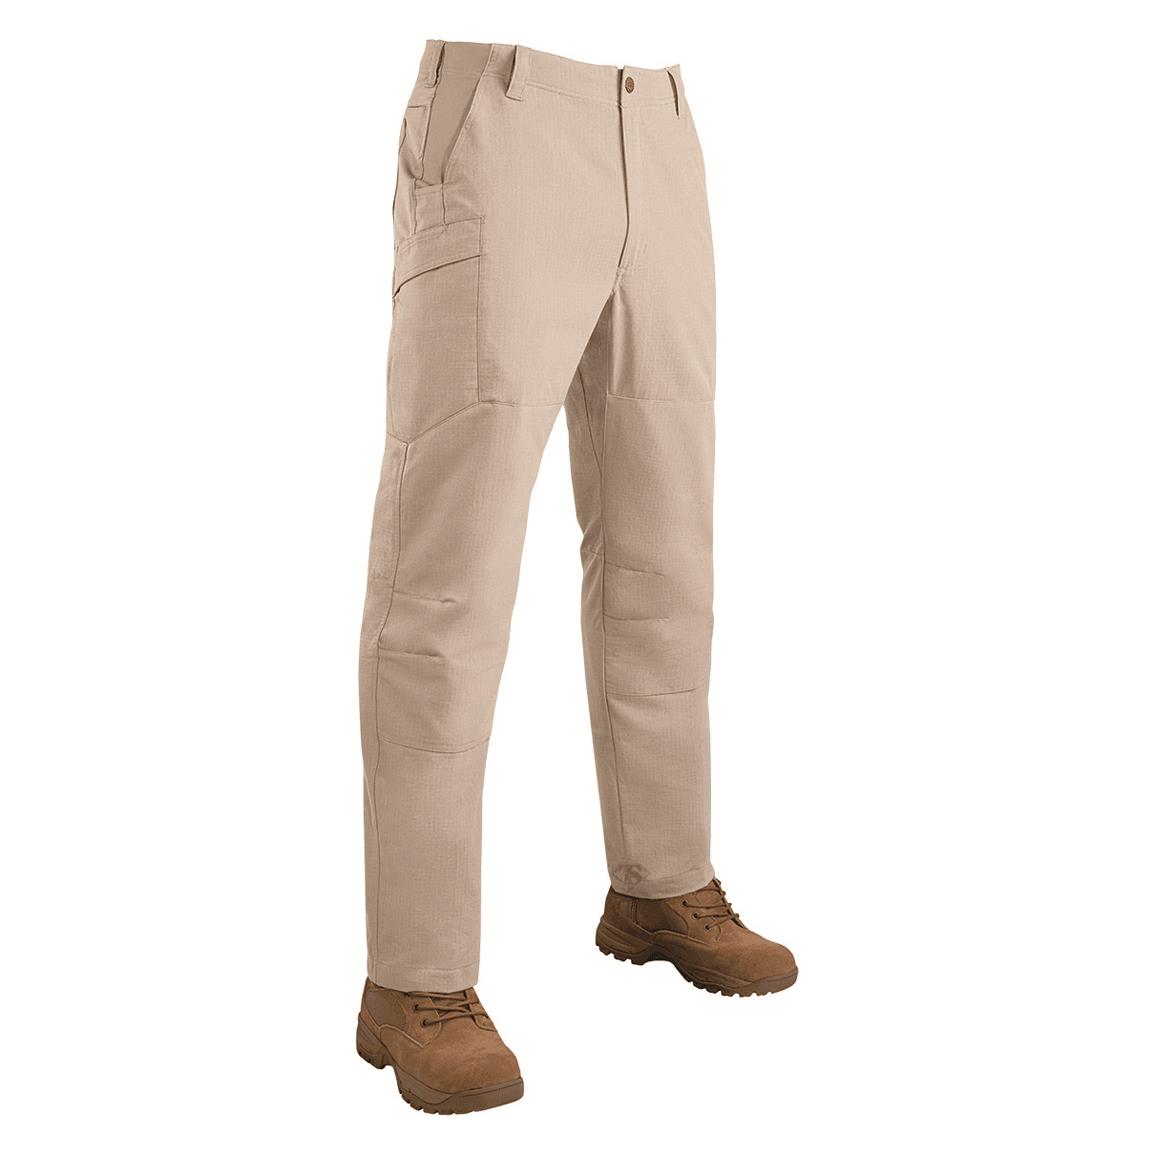 TRU-SPEC Men's 24-7 Series Vector Tactical Pants, Khaki